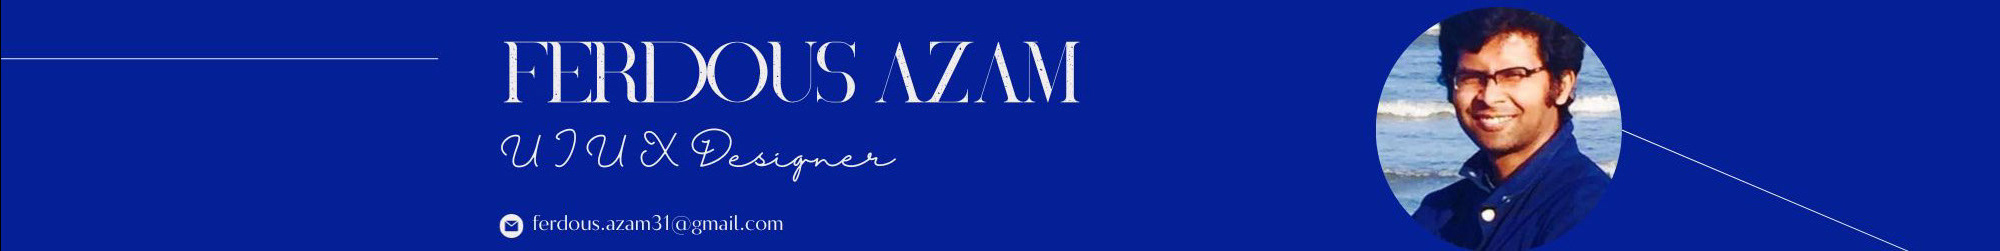 Ferdous Azam's profile banner